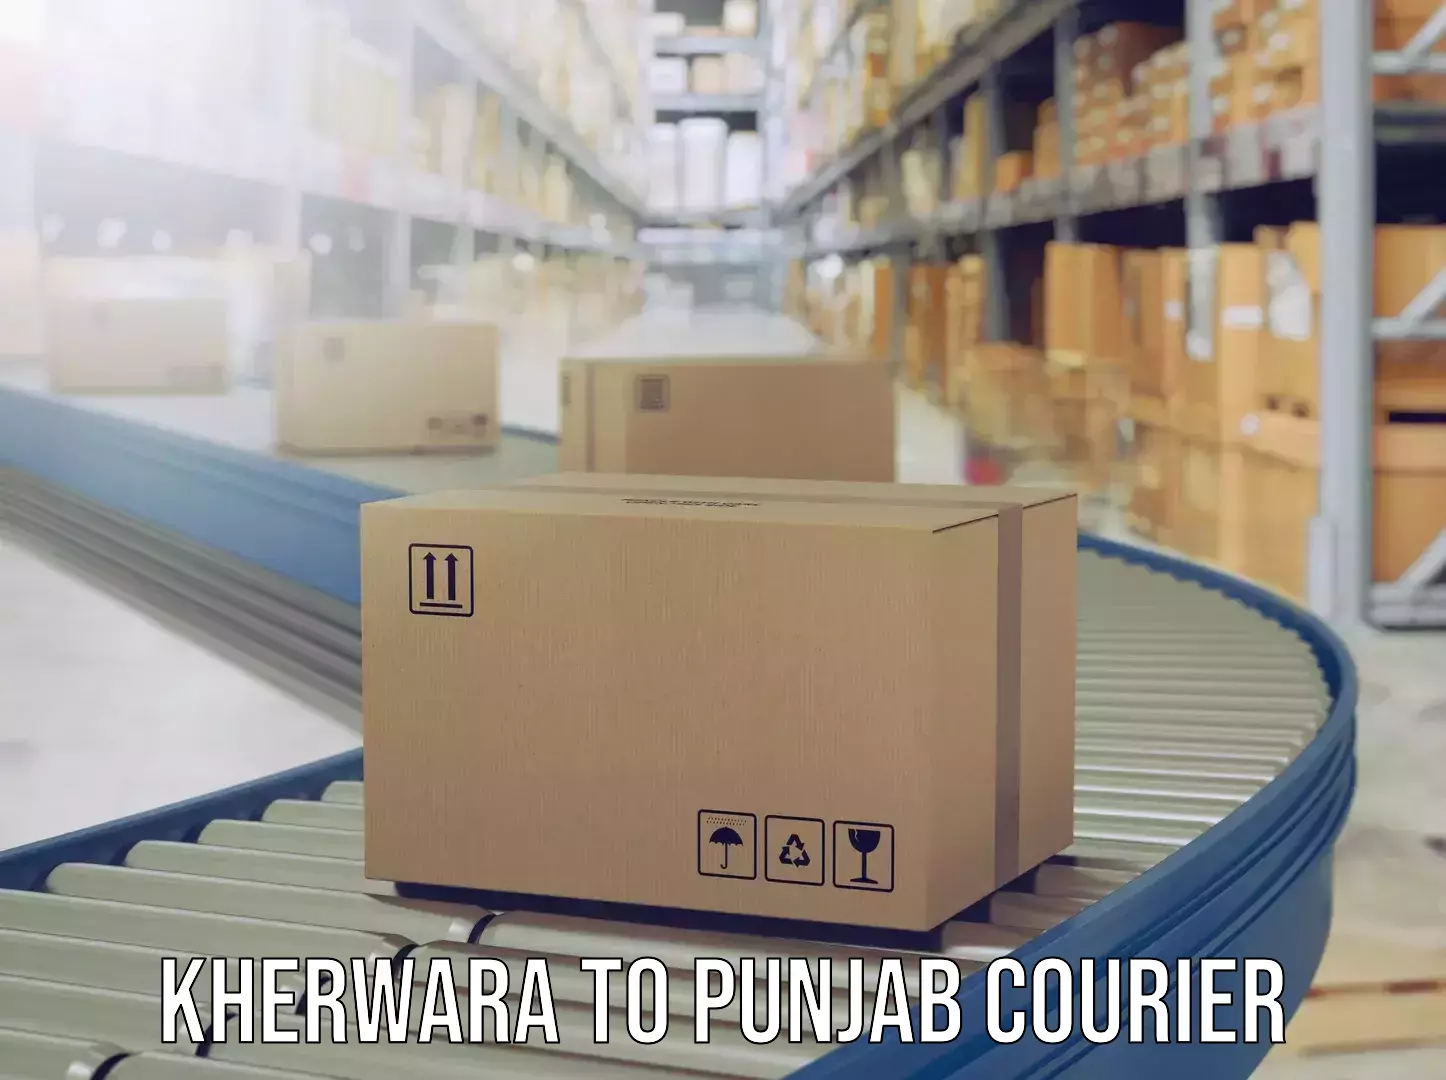 Luggage transport schedule Kherwara to Punjab